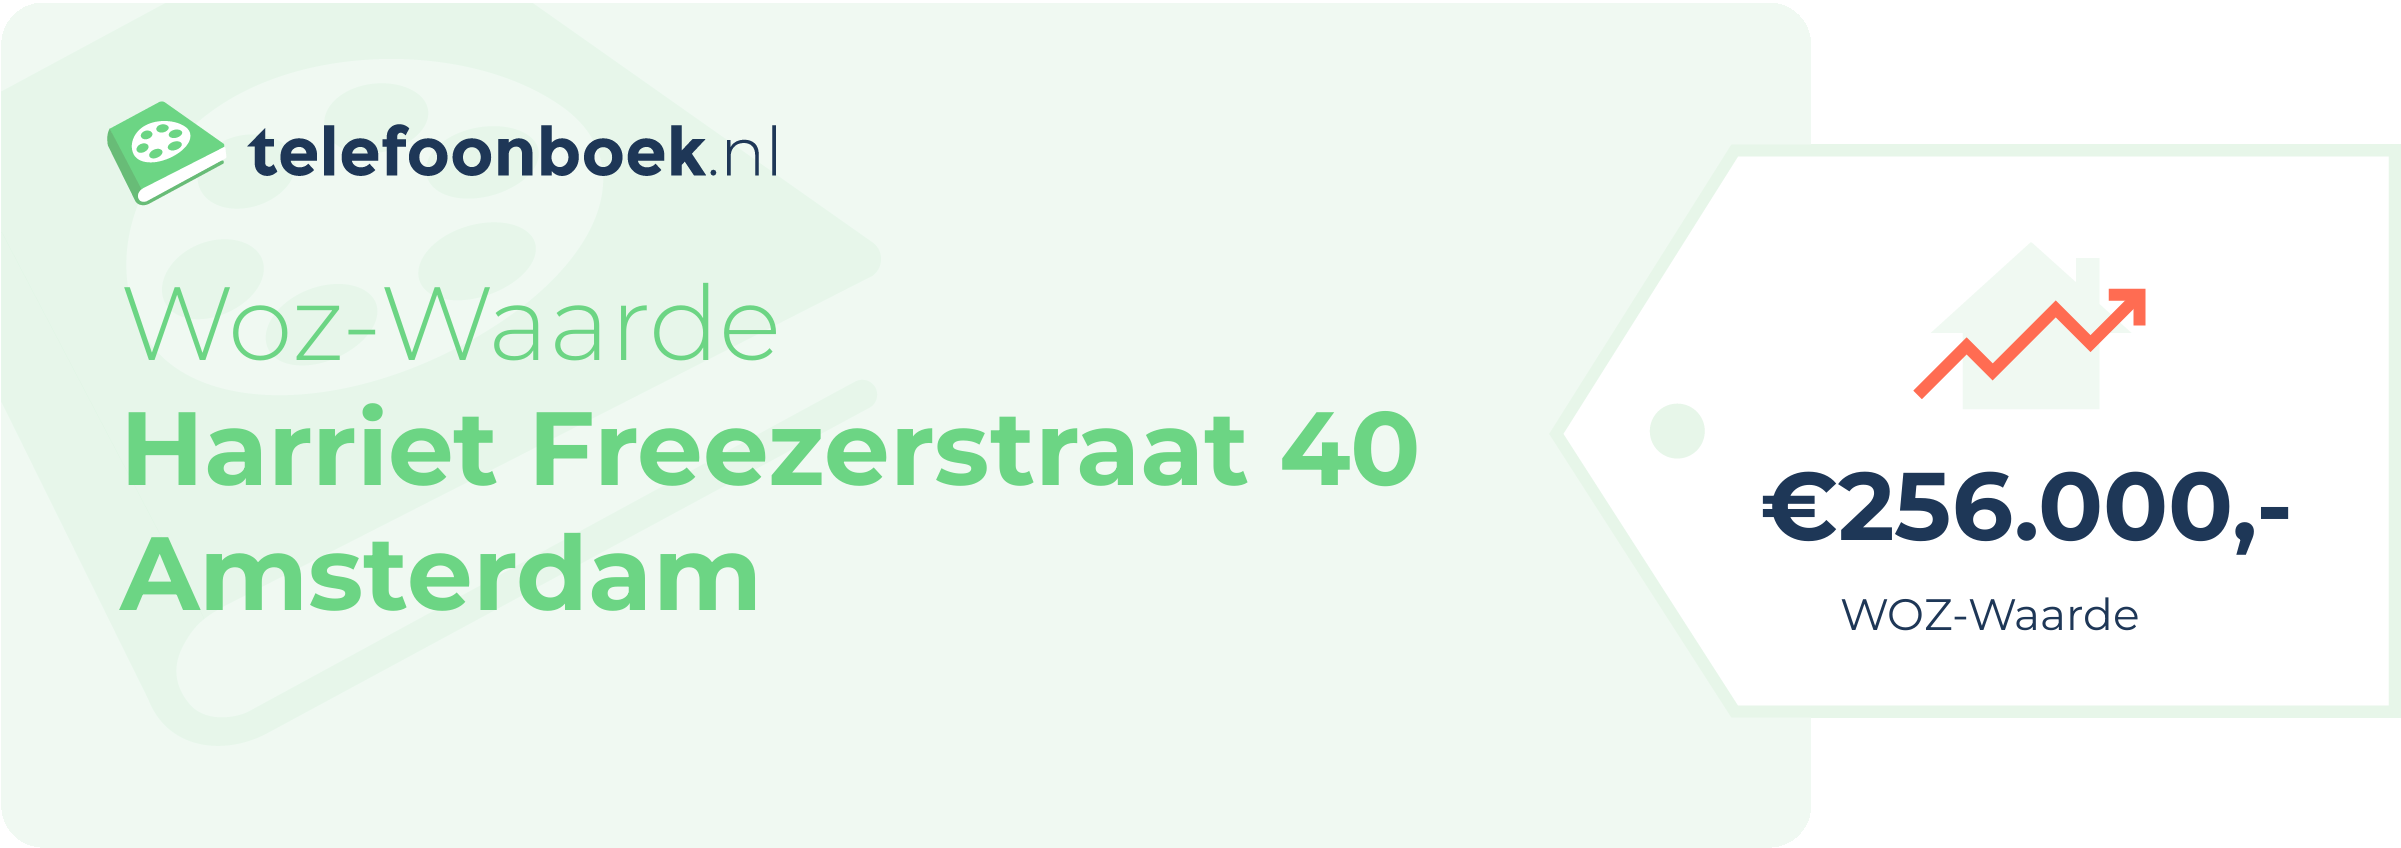 WOZ-waarde Harriet Freezerstraat 40 Amsterdam